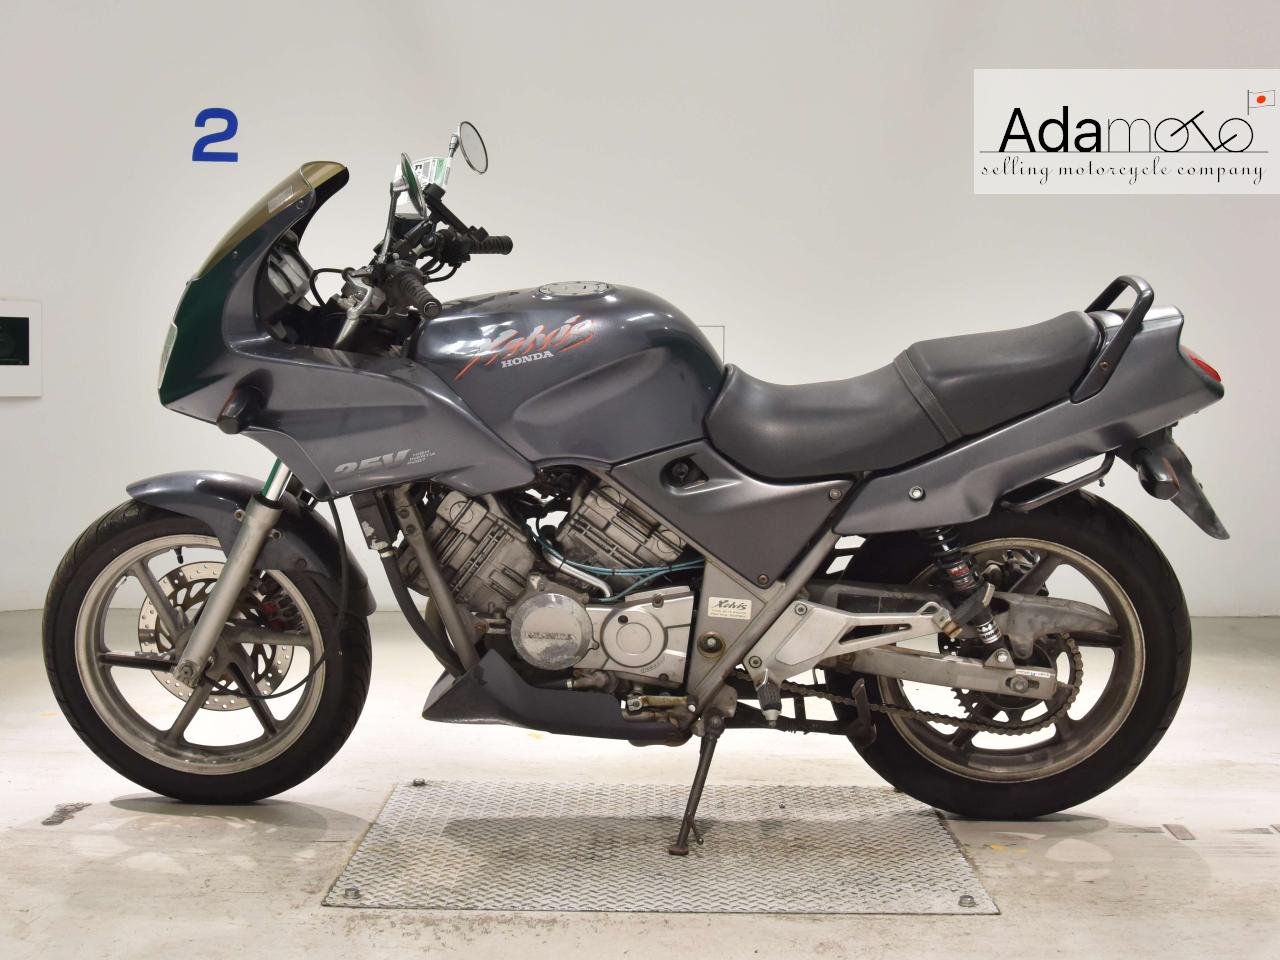 Honda XELVIS - Adamoto - Motorcycles from Japan